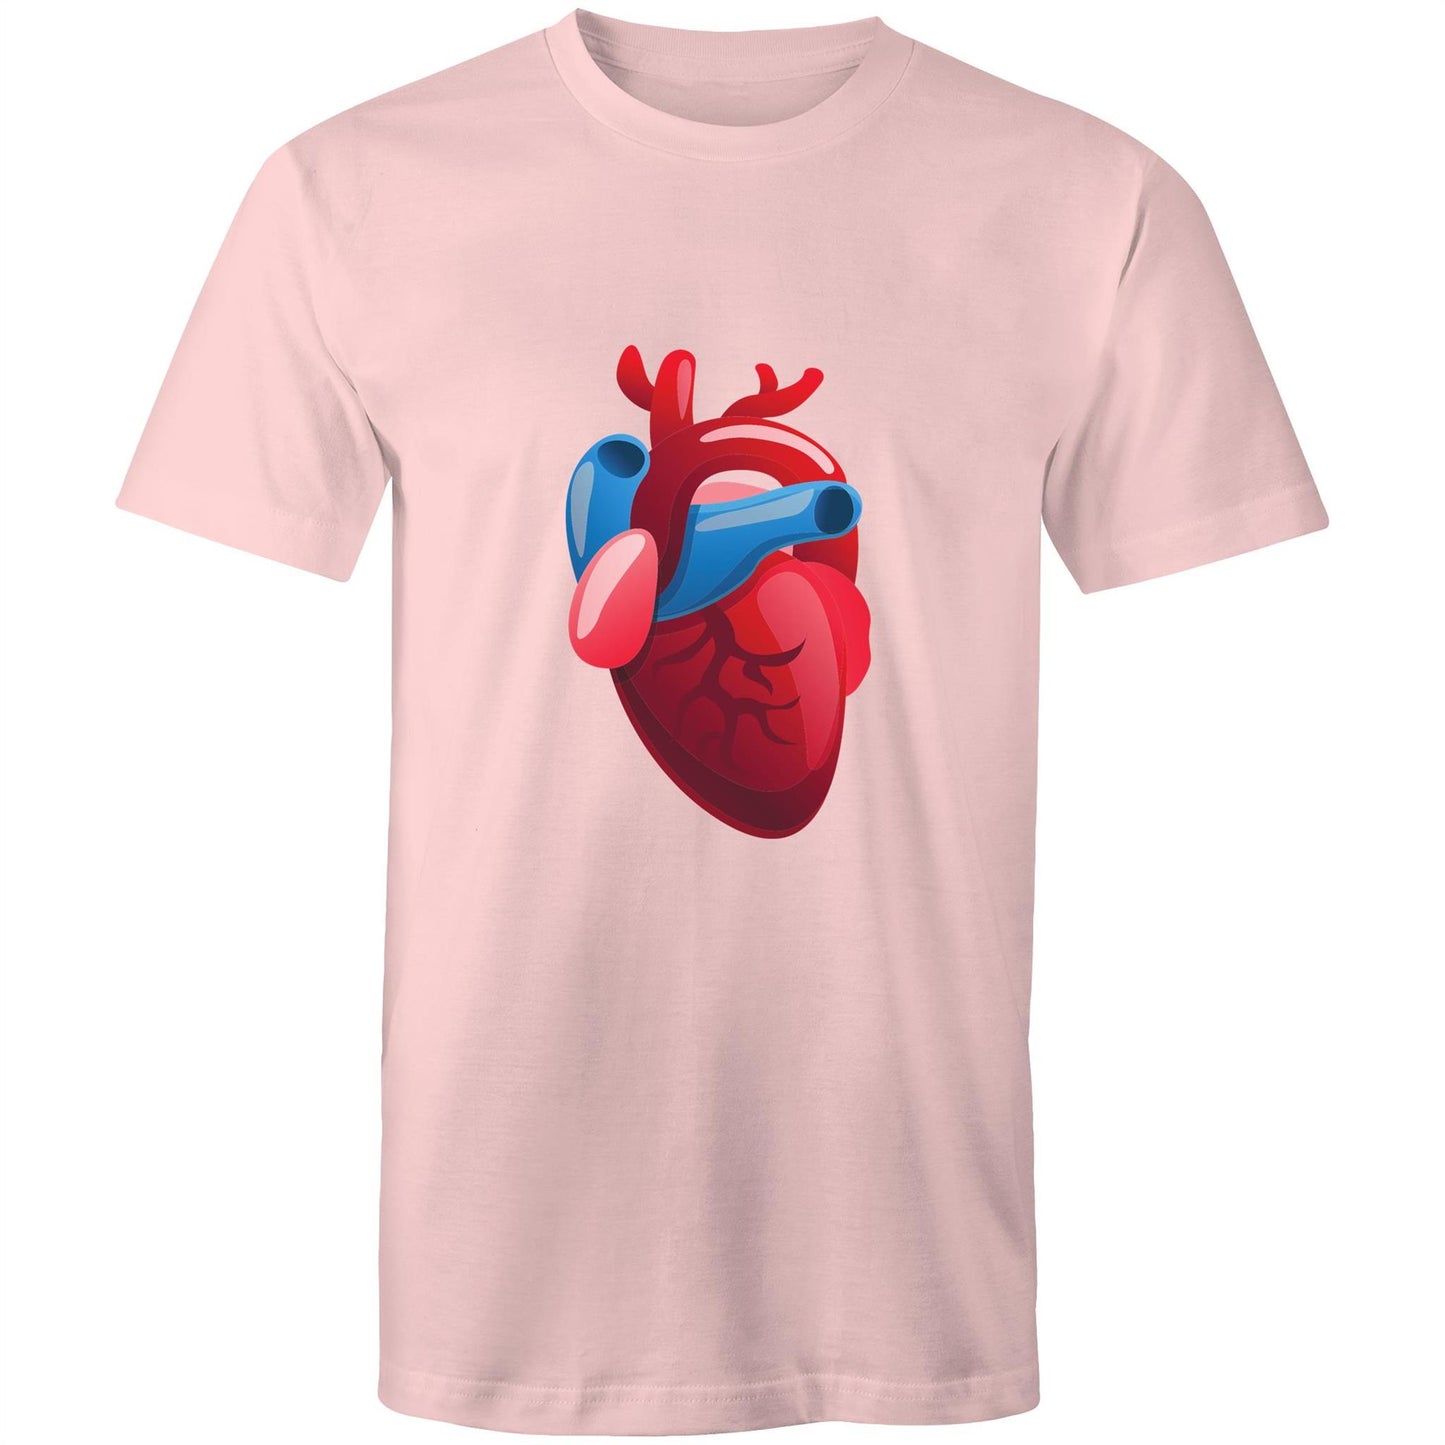 Real Human Heart - Mens T-Shirt